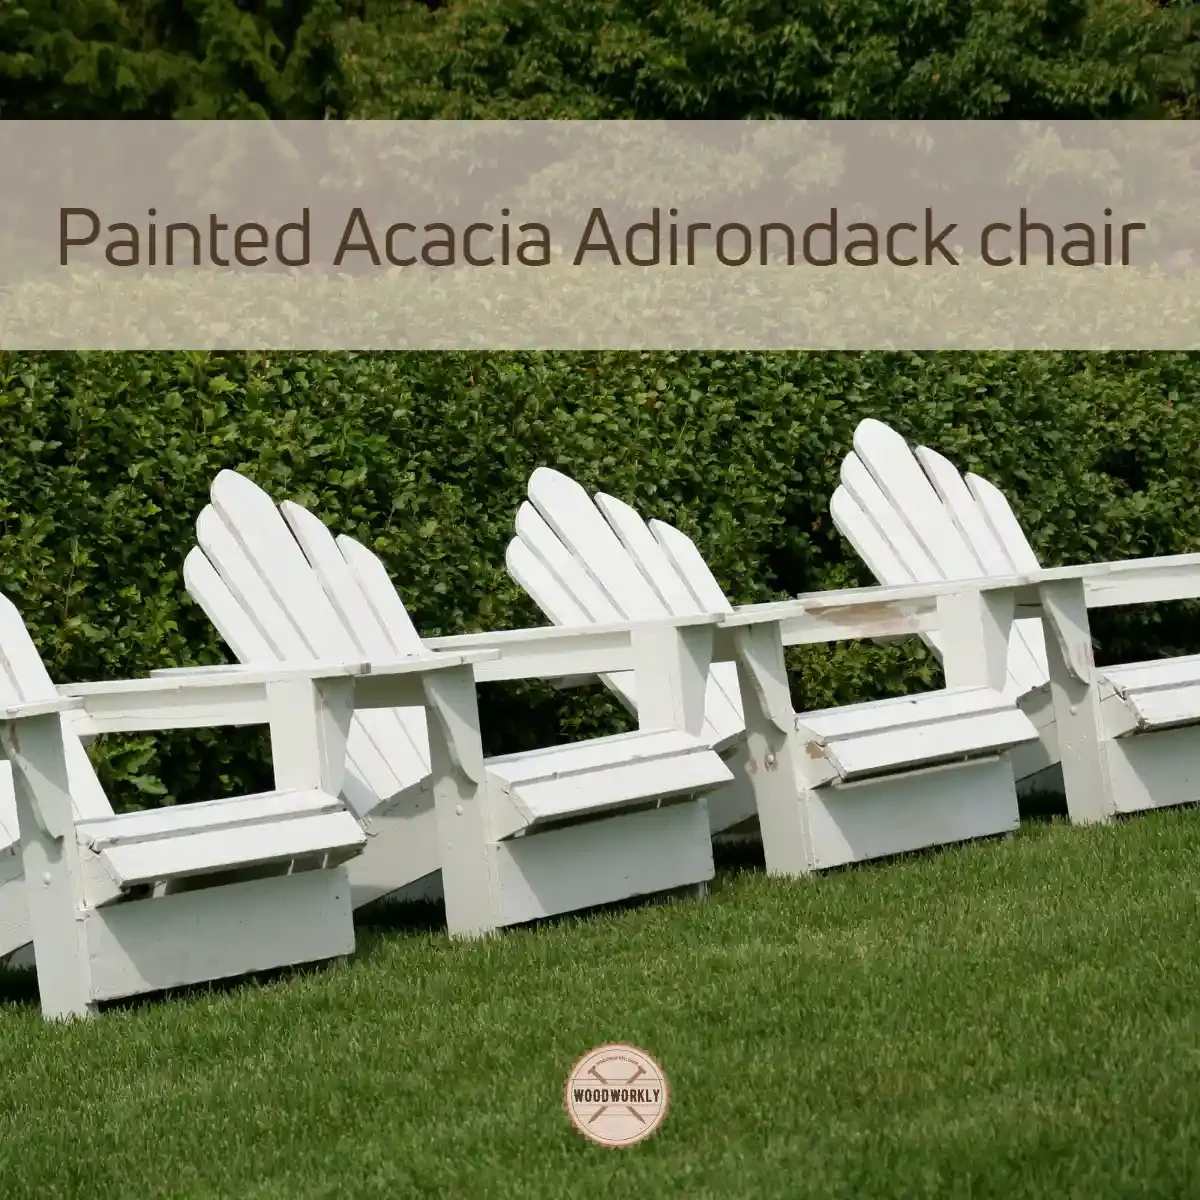 Painted Acacia Adirondack chair